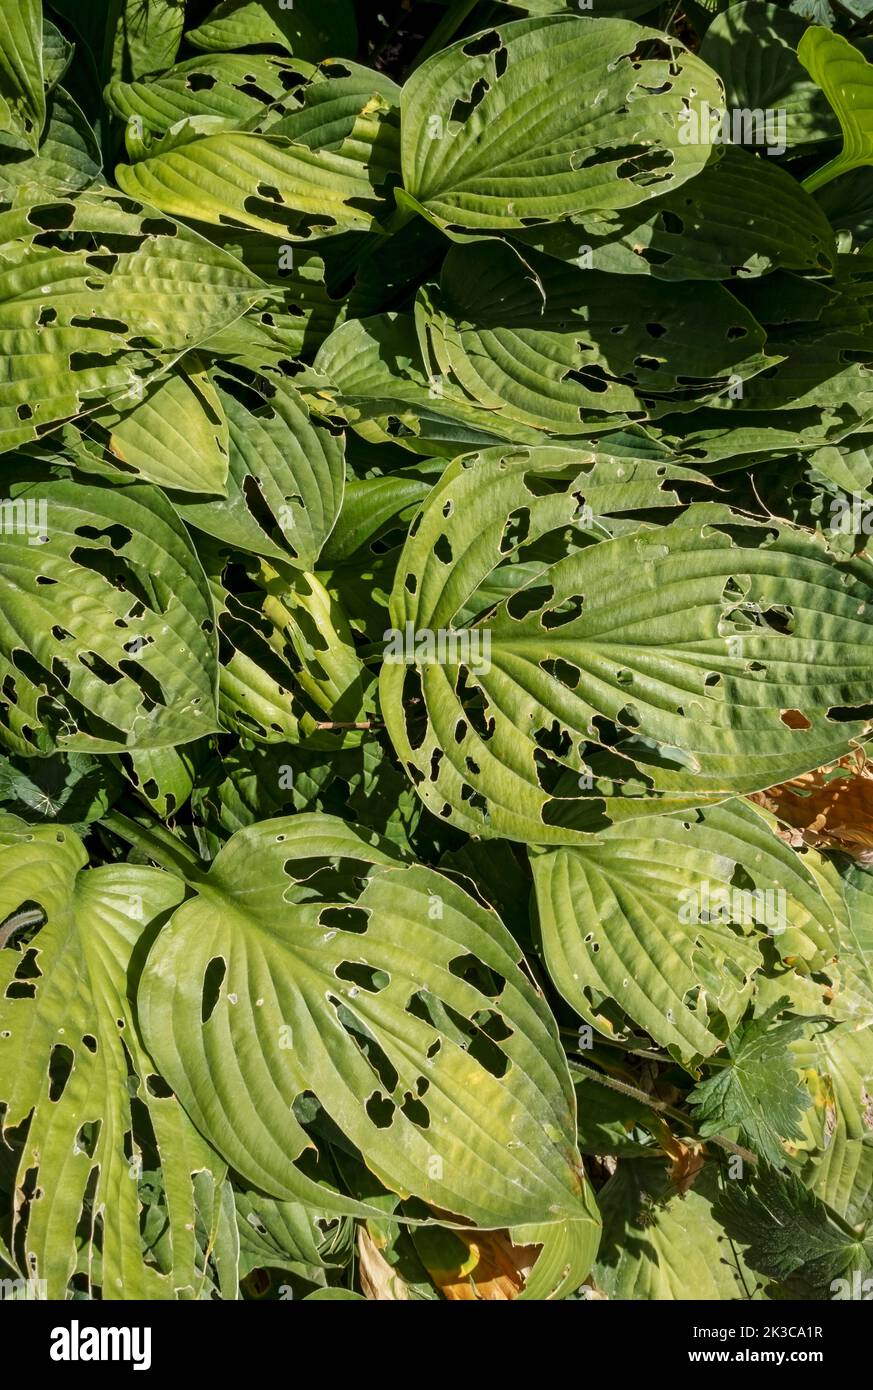 Nahaufnahme von Hosta-Hostas, die im Sommer an der Grenze mit Blättern wachsen, die von Schnecken und Nacktschnecken beschädigt wurden England Vereinigtes Königreich GB Großbritannien Stockfoto